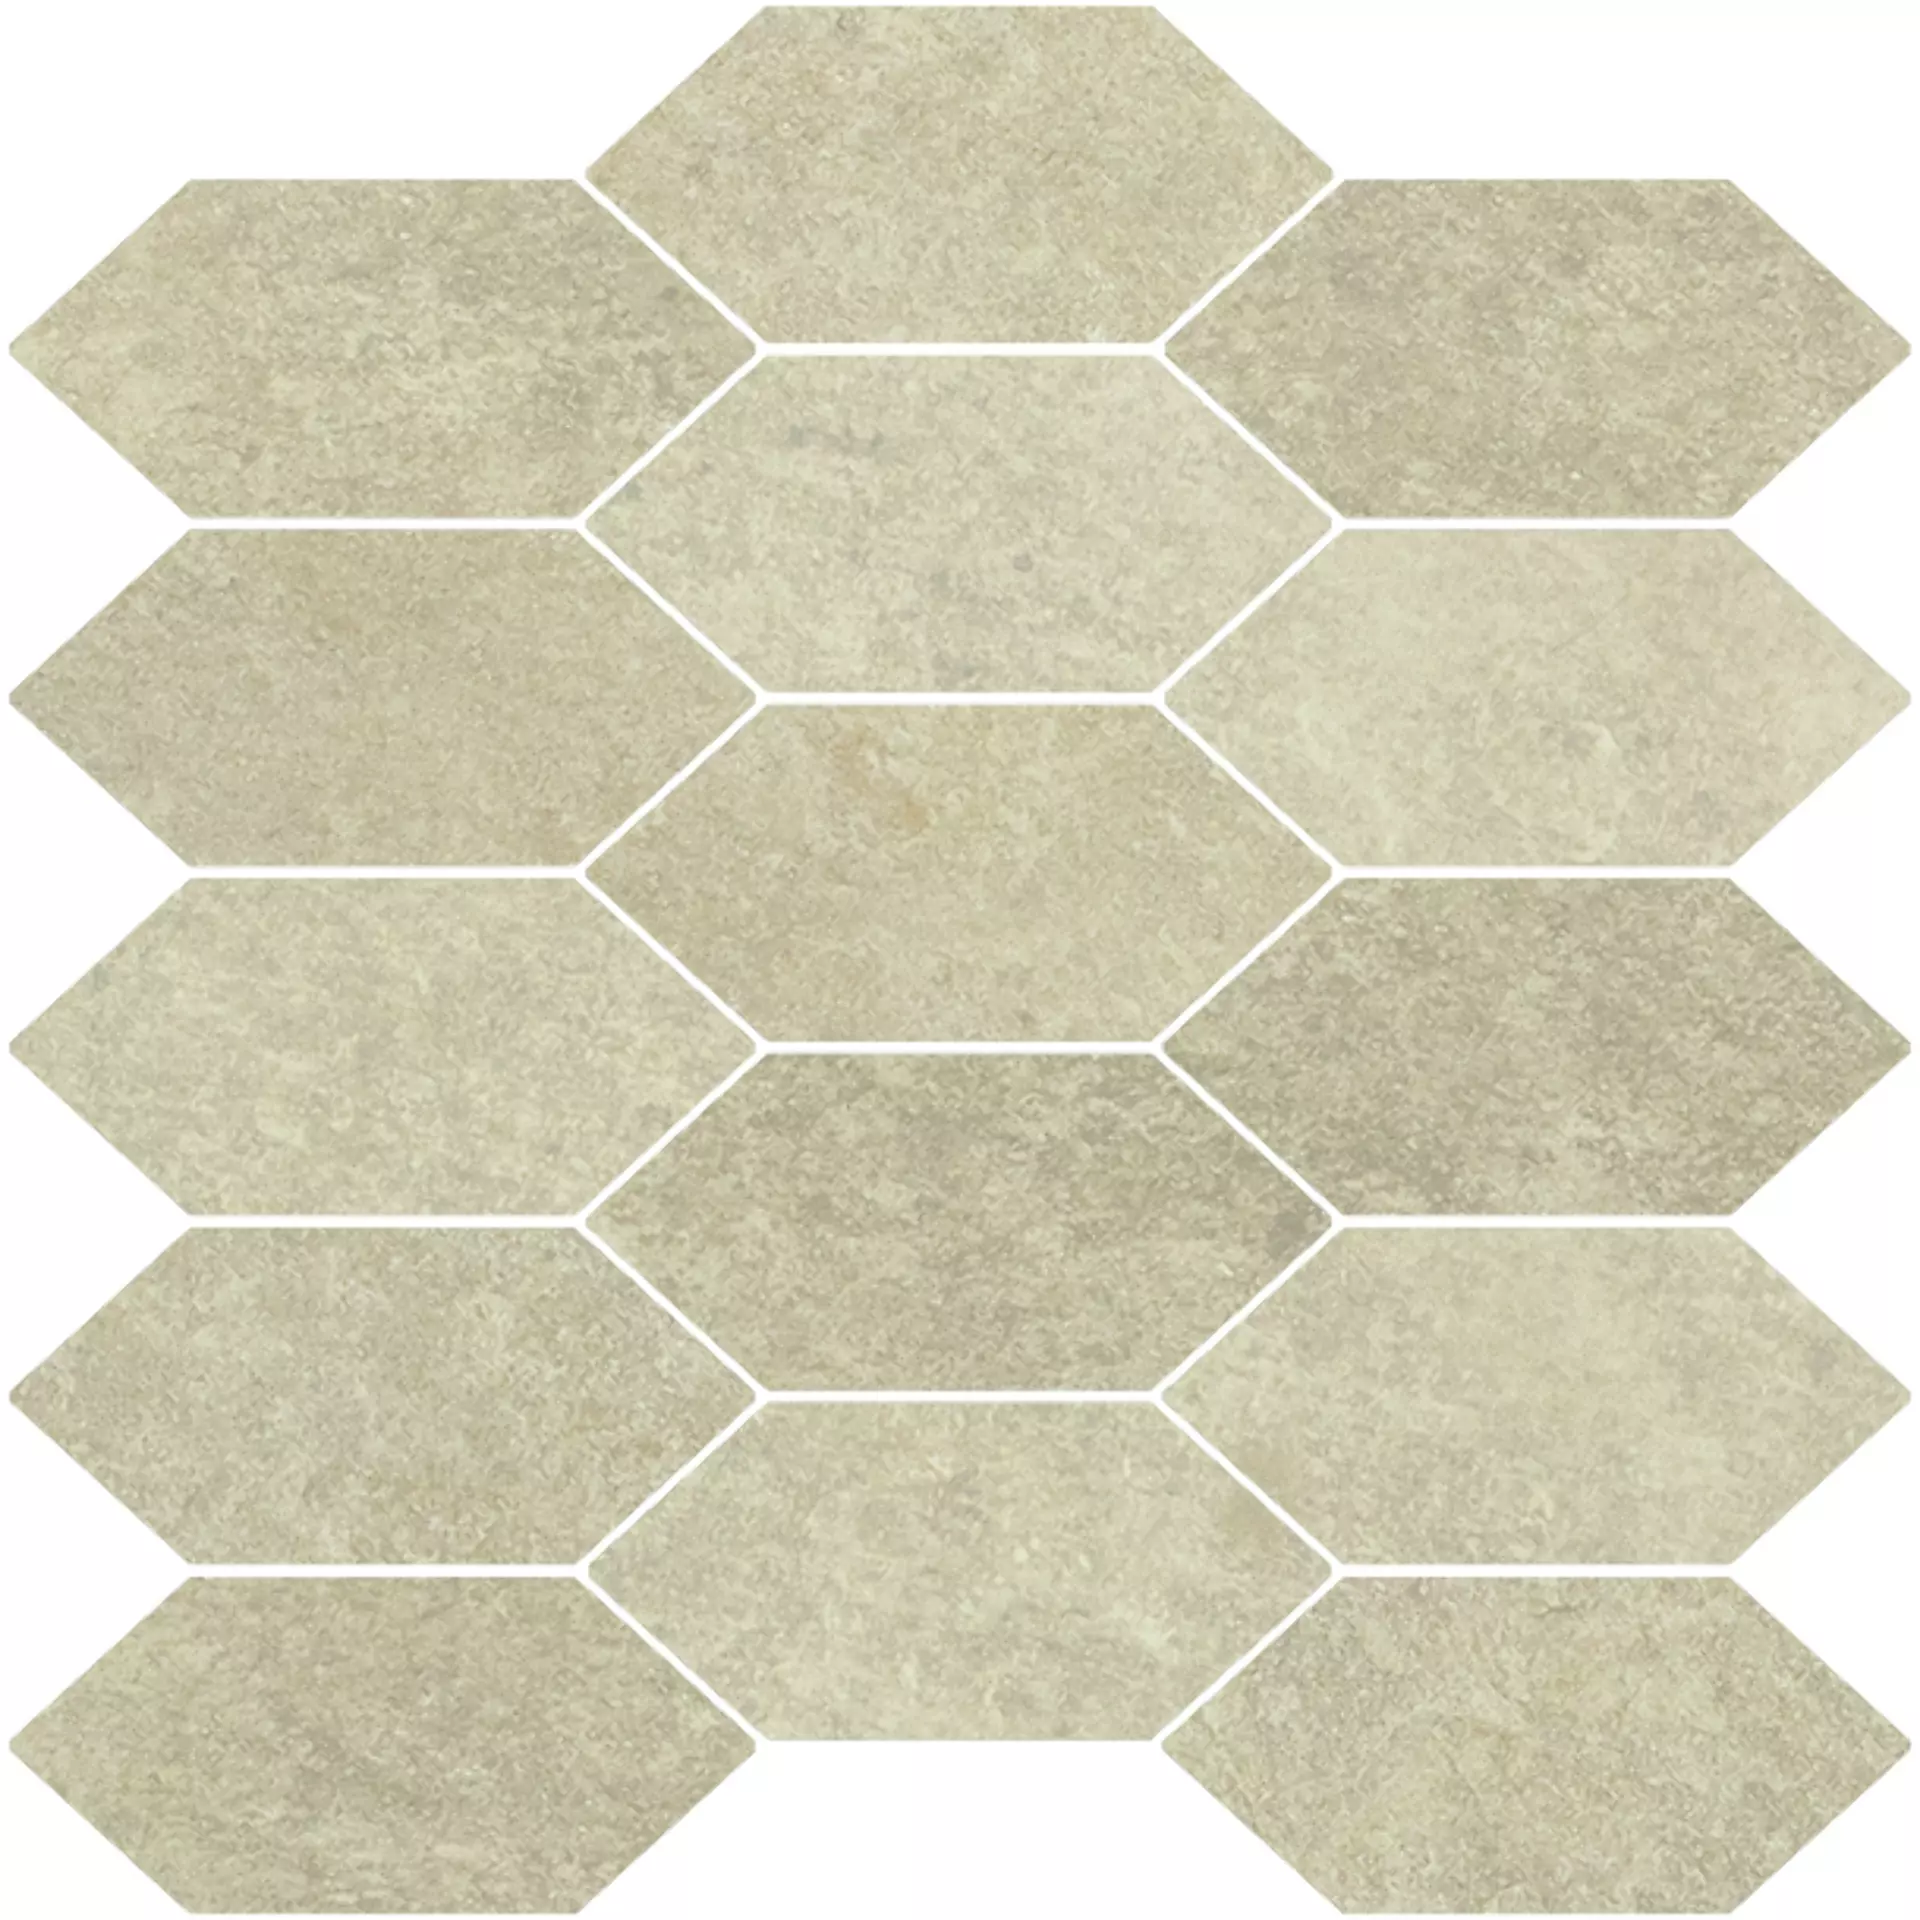 Bodenfliese,Wandfliese Cercom Absolute Clay Naturale Clay 1076680 natur 30x30cm Mosaik Losanga rektifiziert